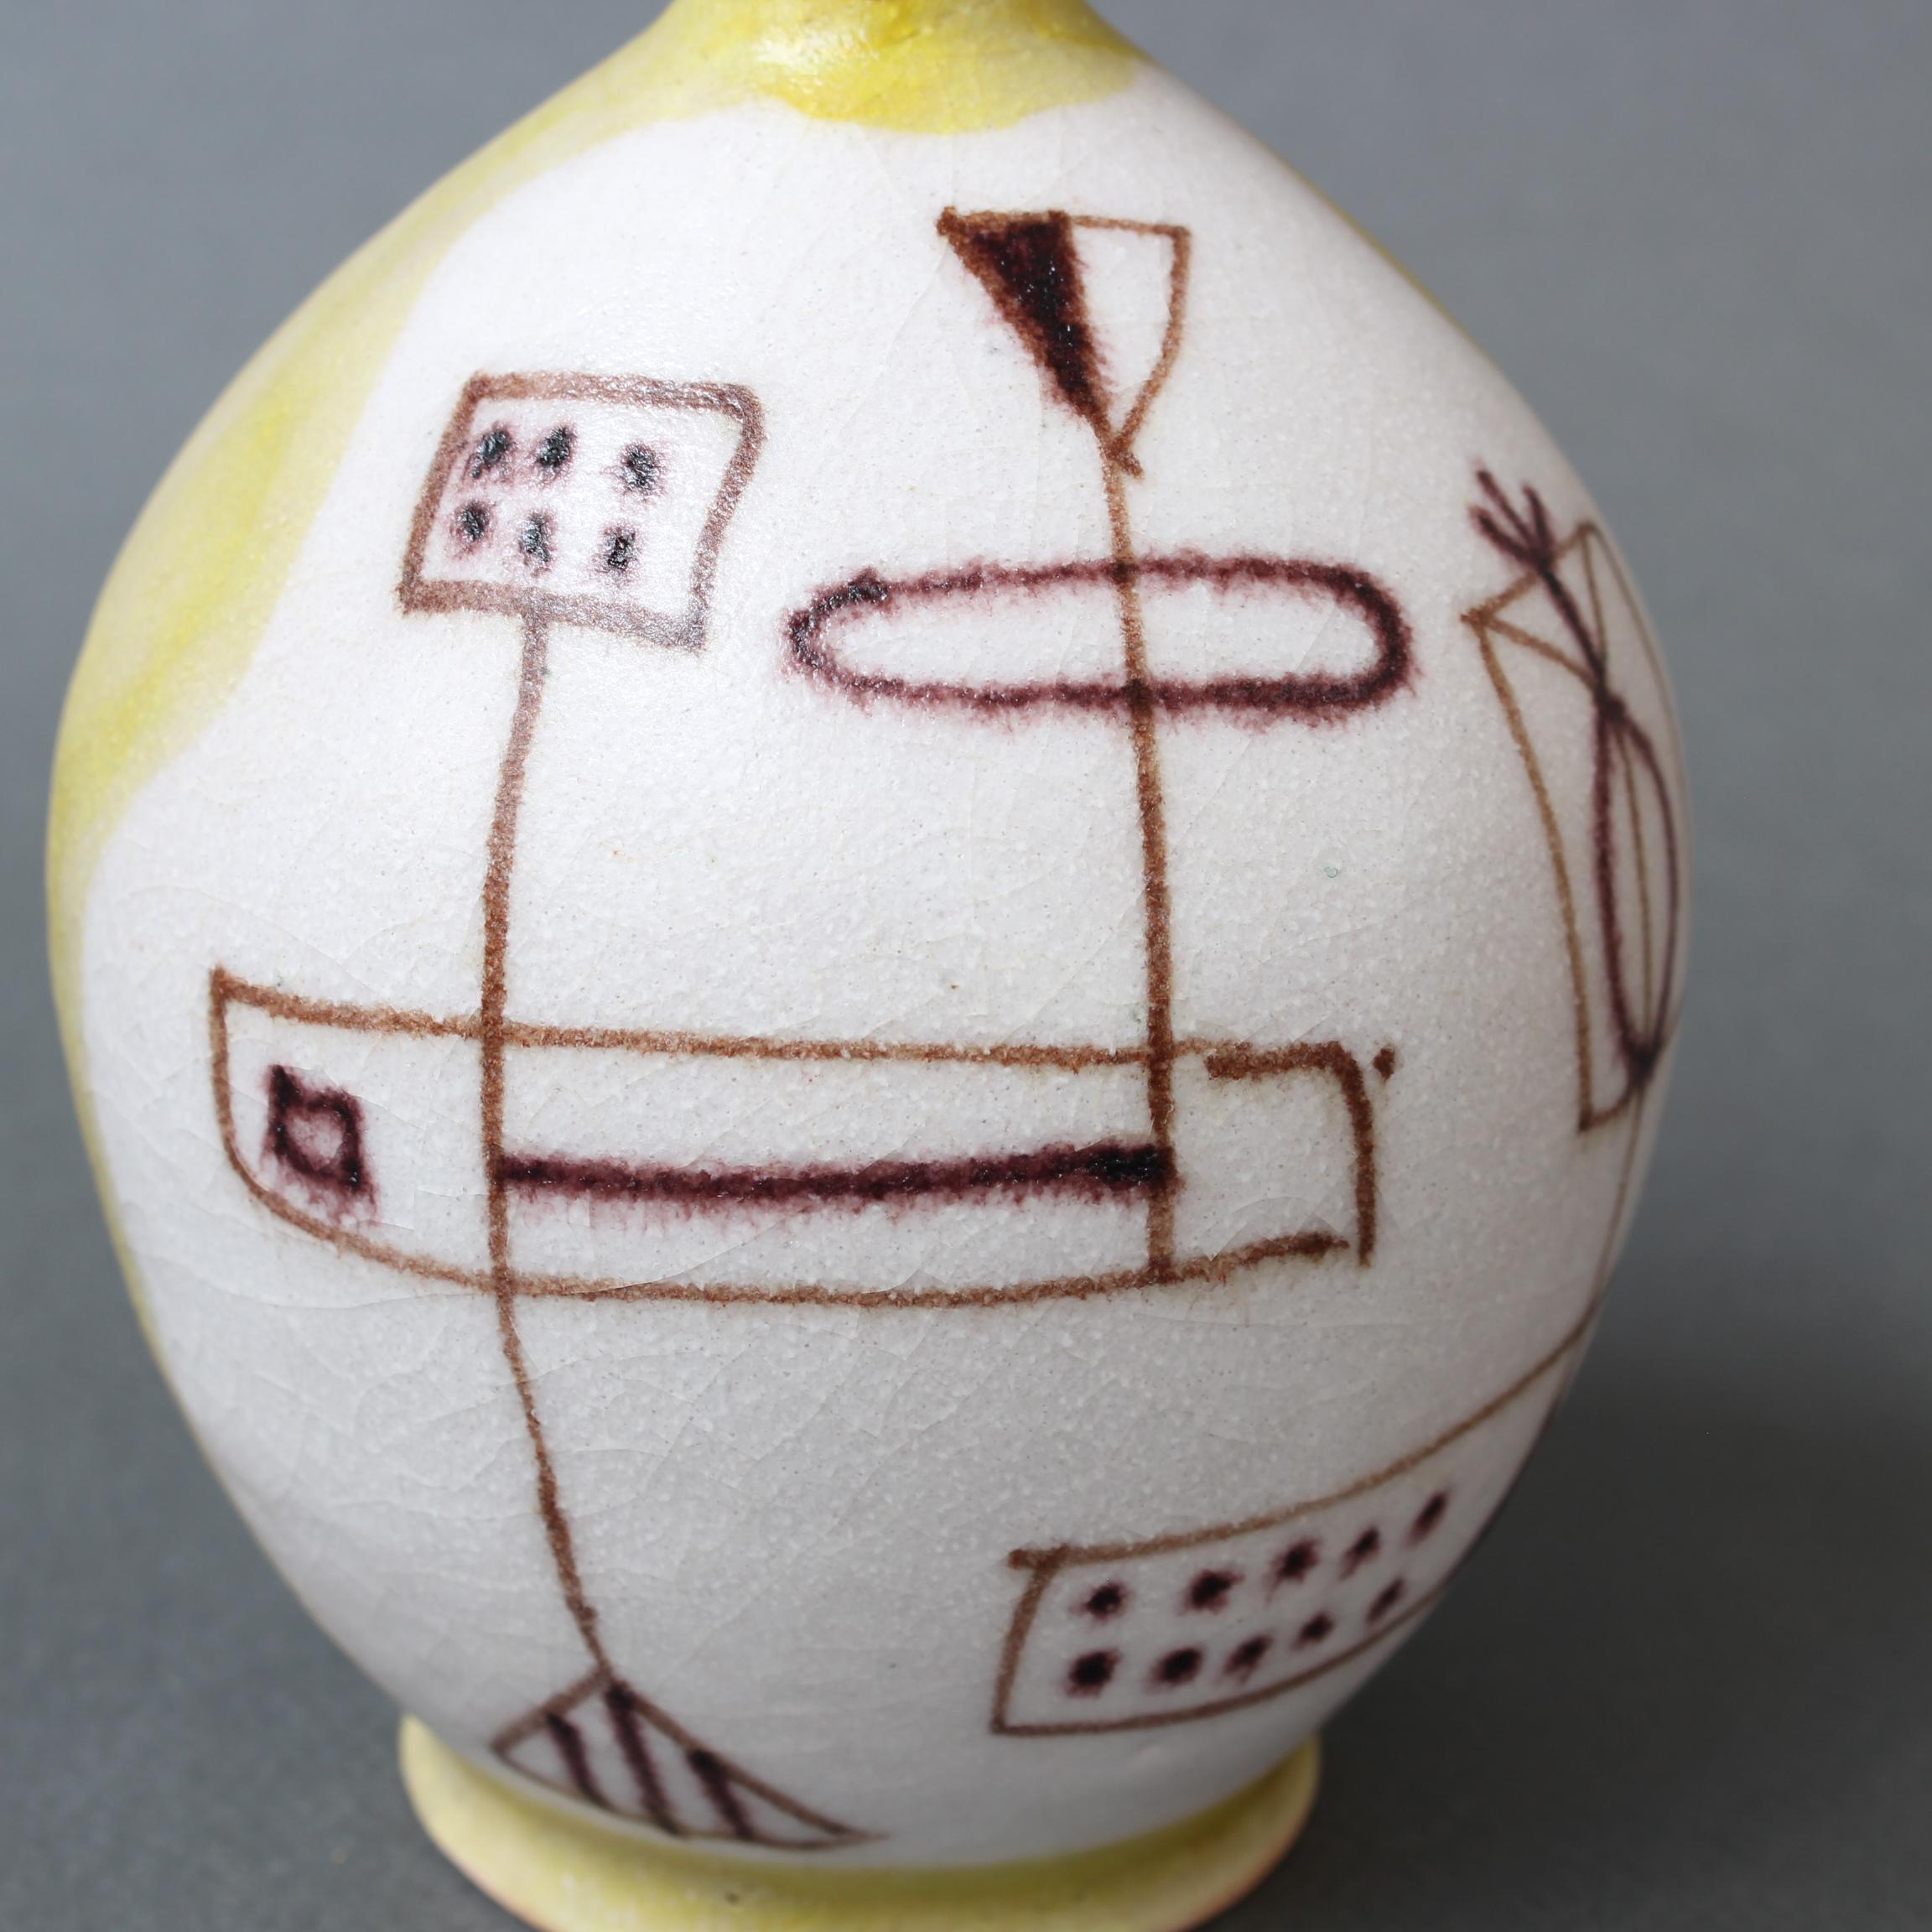 Midcentury Italian Ceramic Vase by Guido Gambone, 'circa 1950s' 2